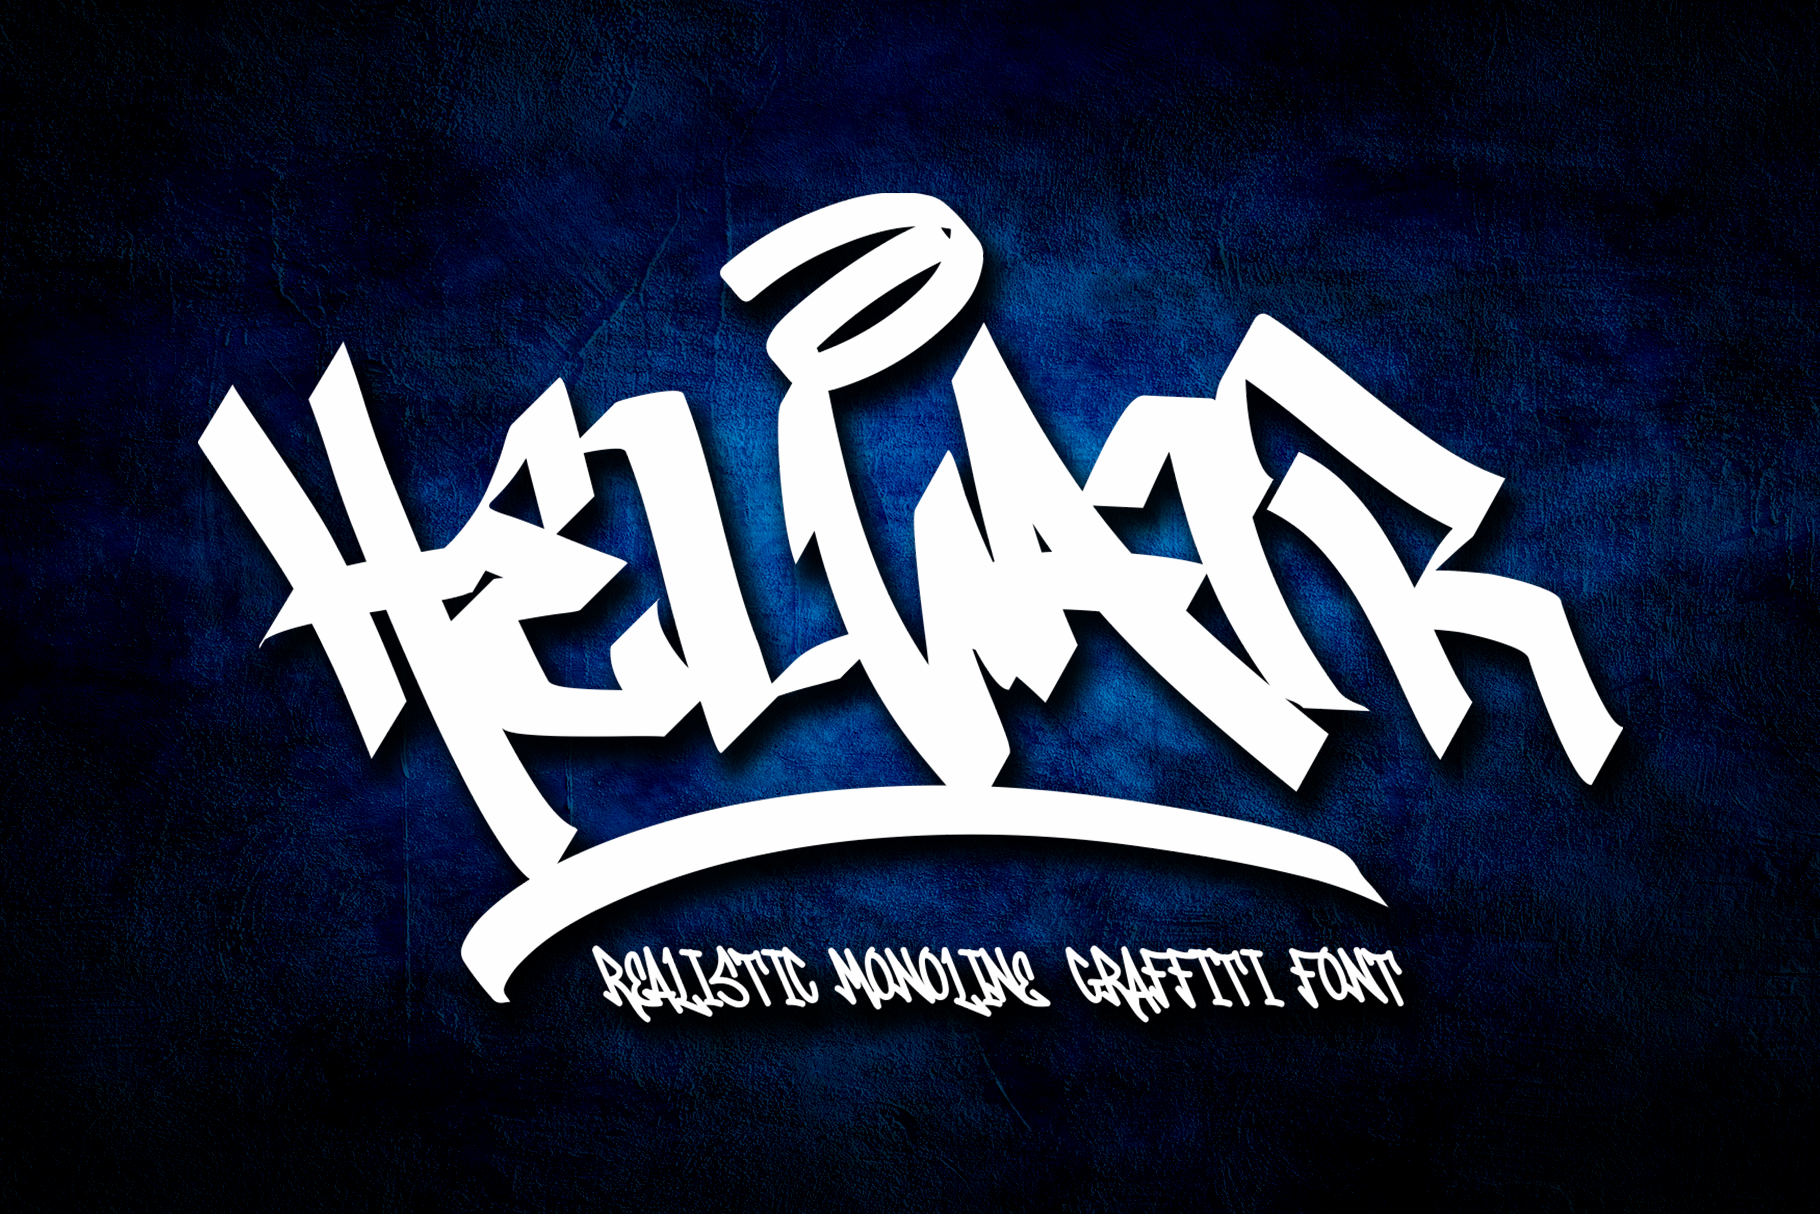 Helvair Graffiti